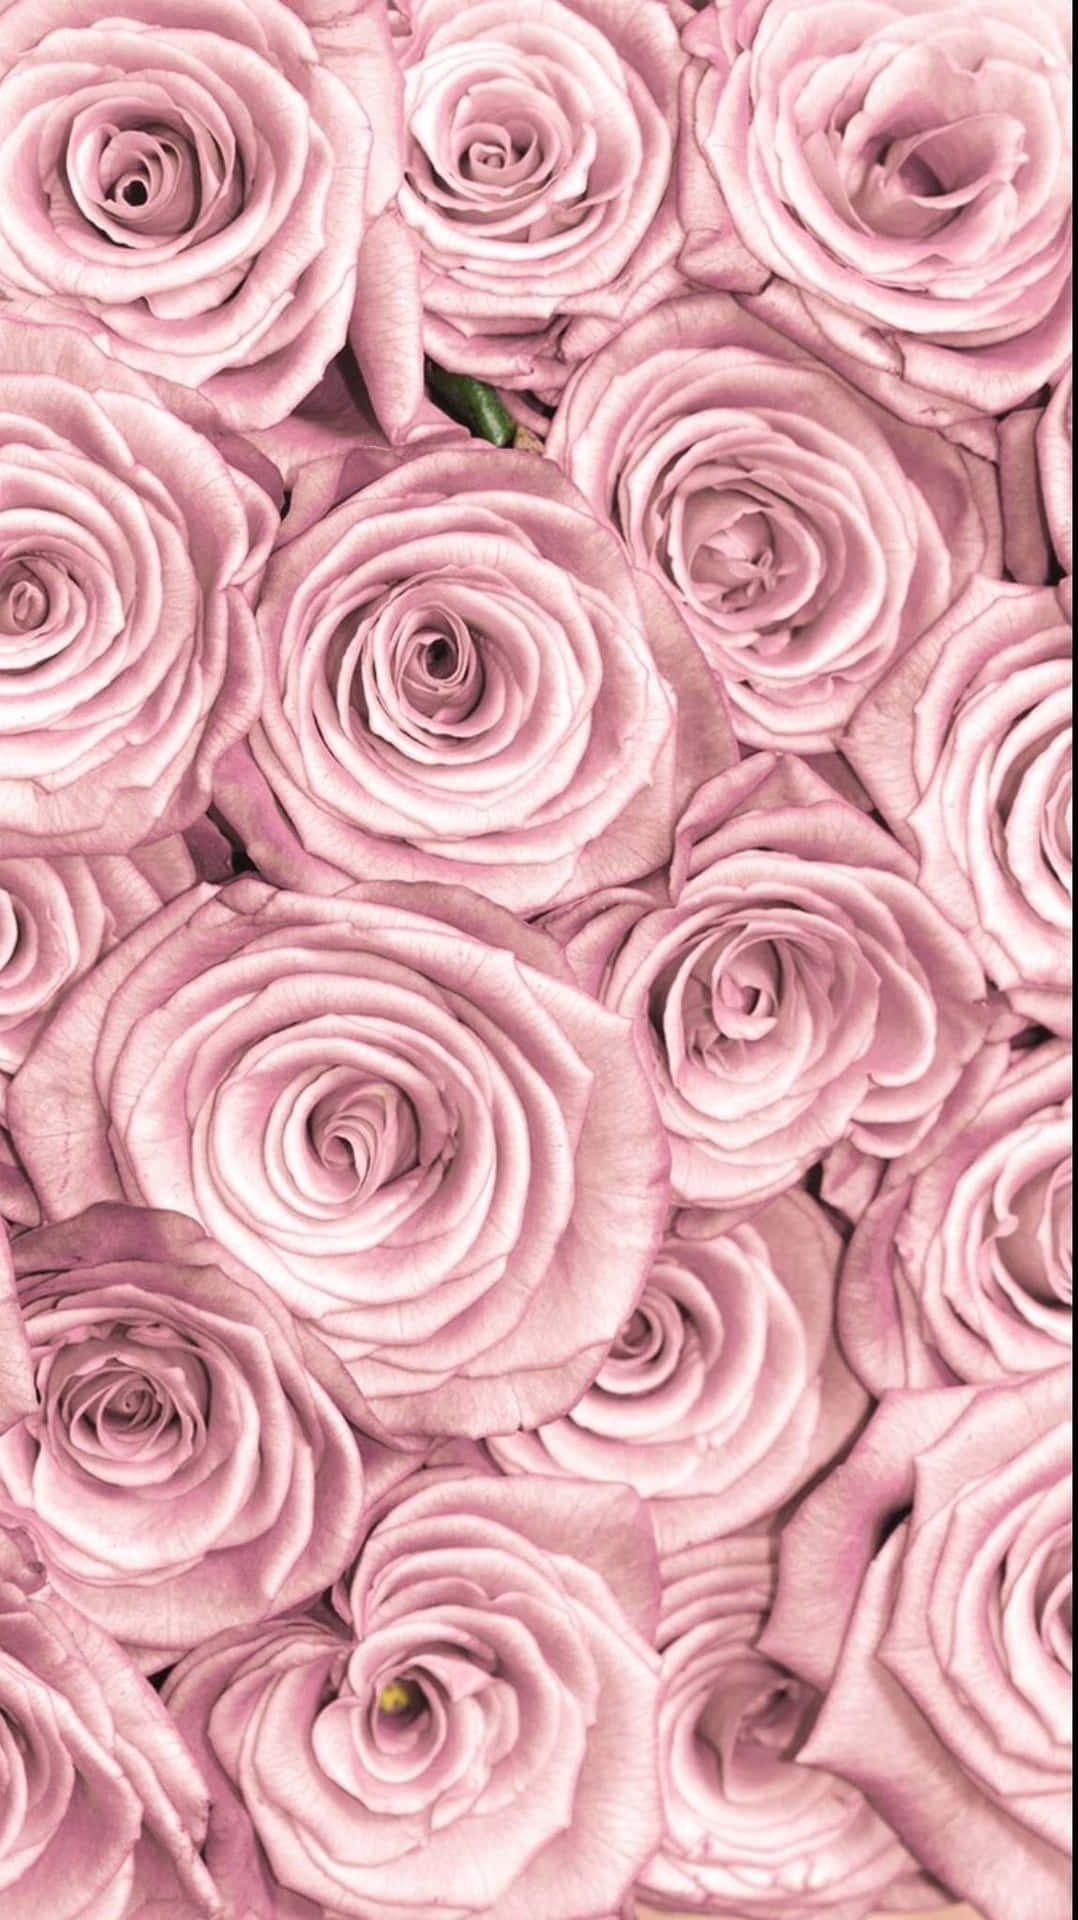 Unadelicata Rosa Rosa, Composta Da Strati Pulsanti Di Petali Intorno A Un Centro Giallo Vibrante. Sfondo